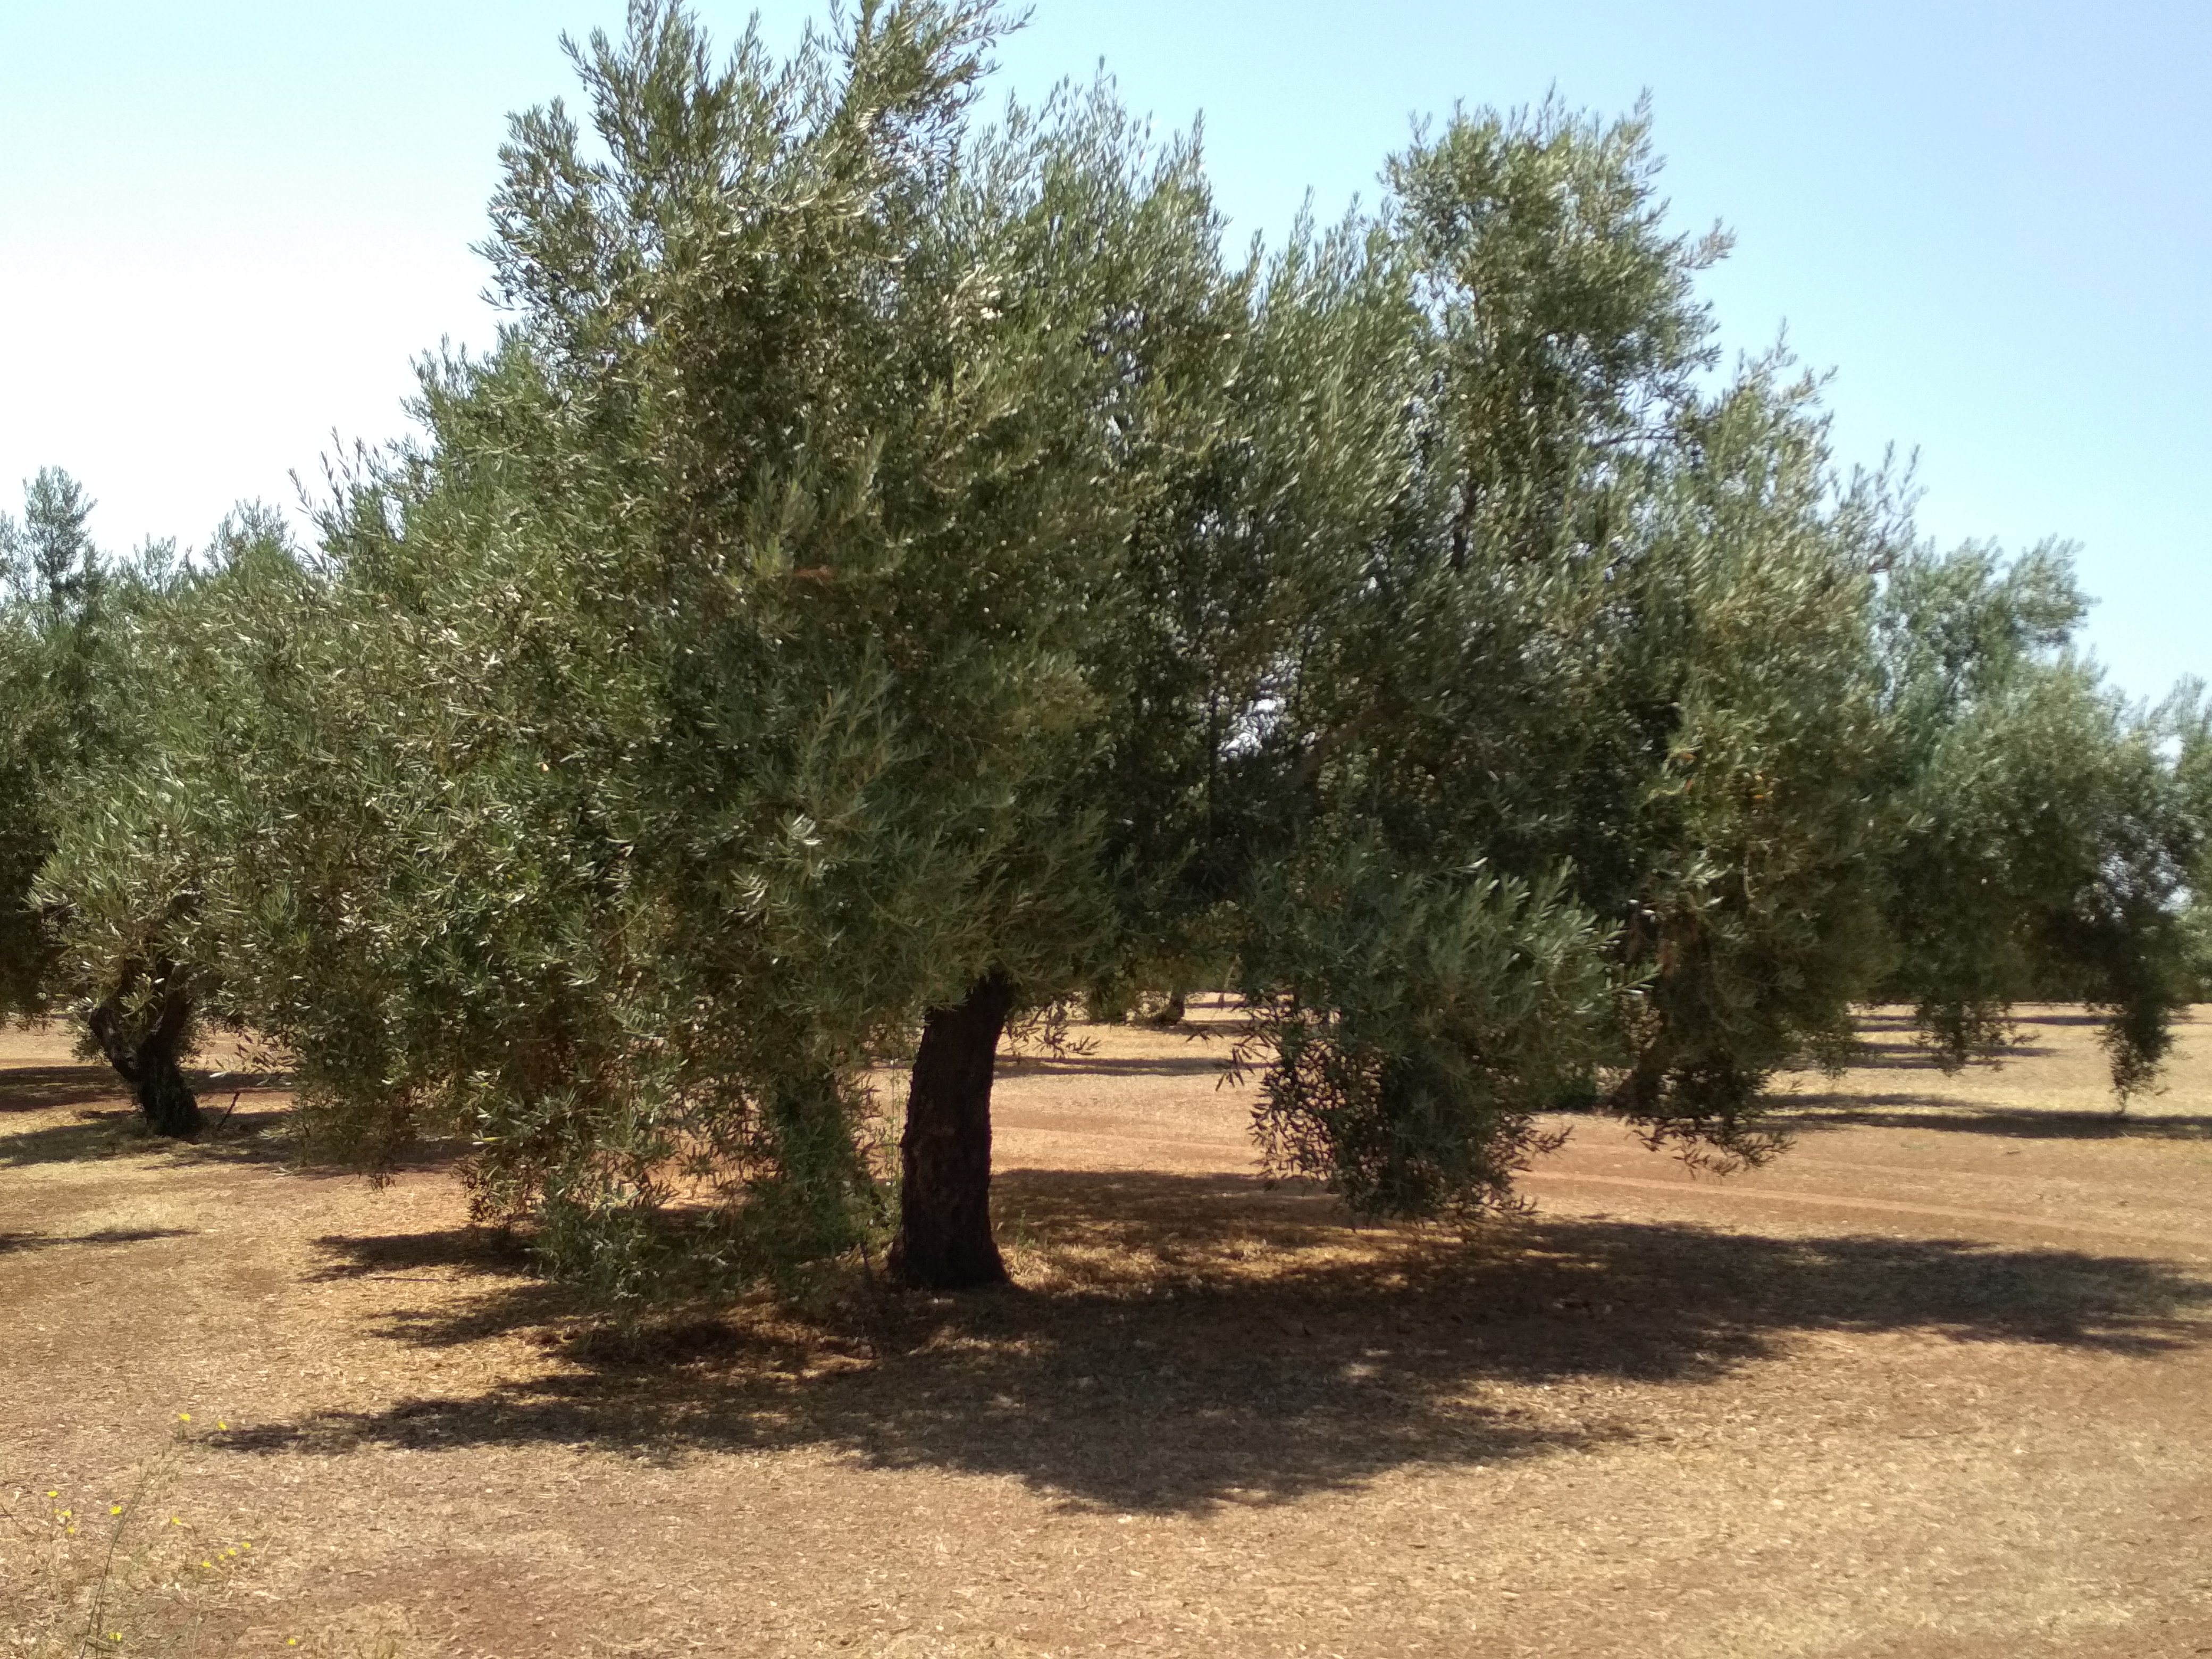 Imagen 1: La evaluación visual del olivo demostró efectos muy positivos sobre el crecimiento vegetativo, la floración y el desarrollo del fruto gracias a BALANCE